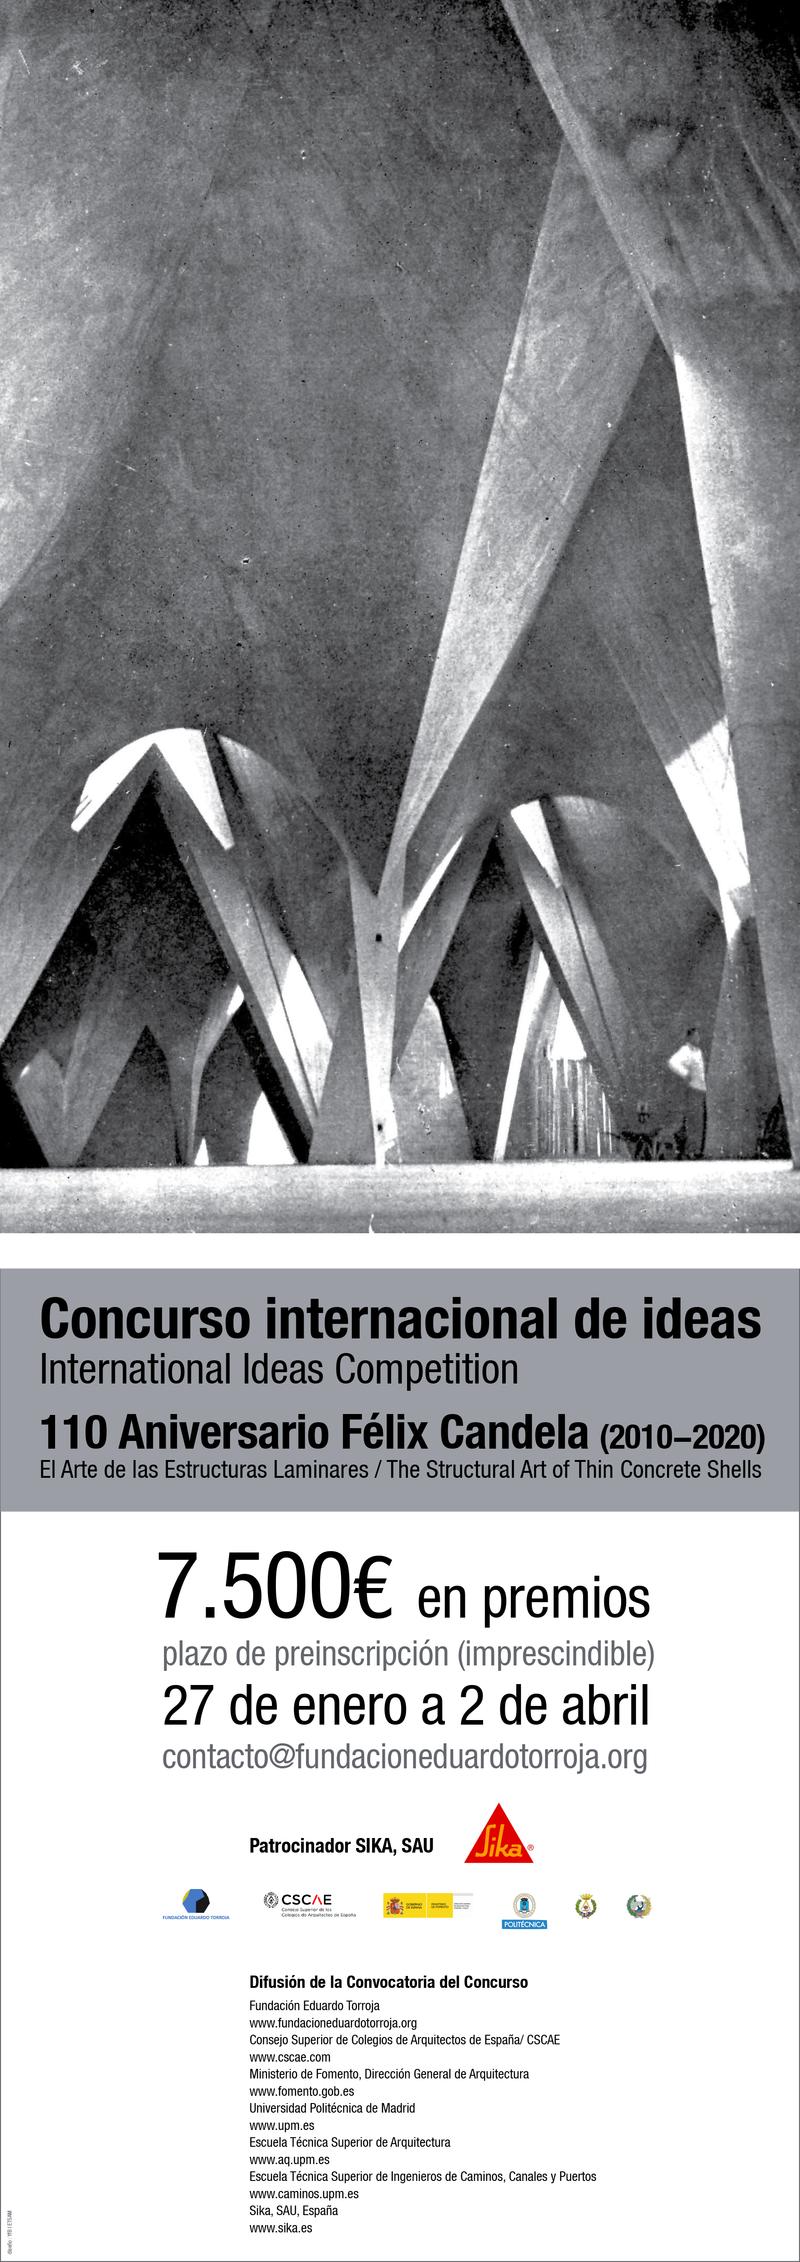 Concurso Internacional de Ideas Félix Candela